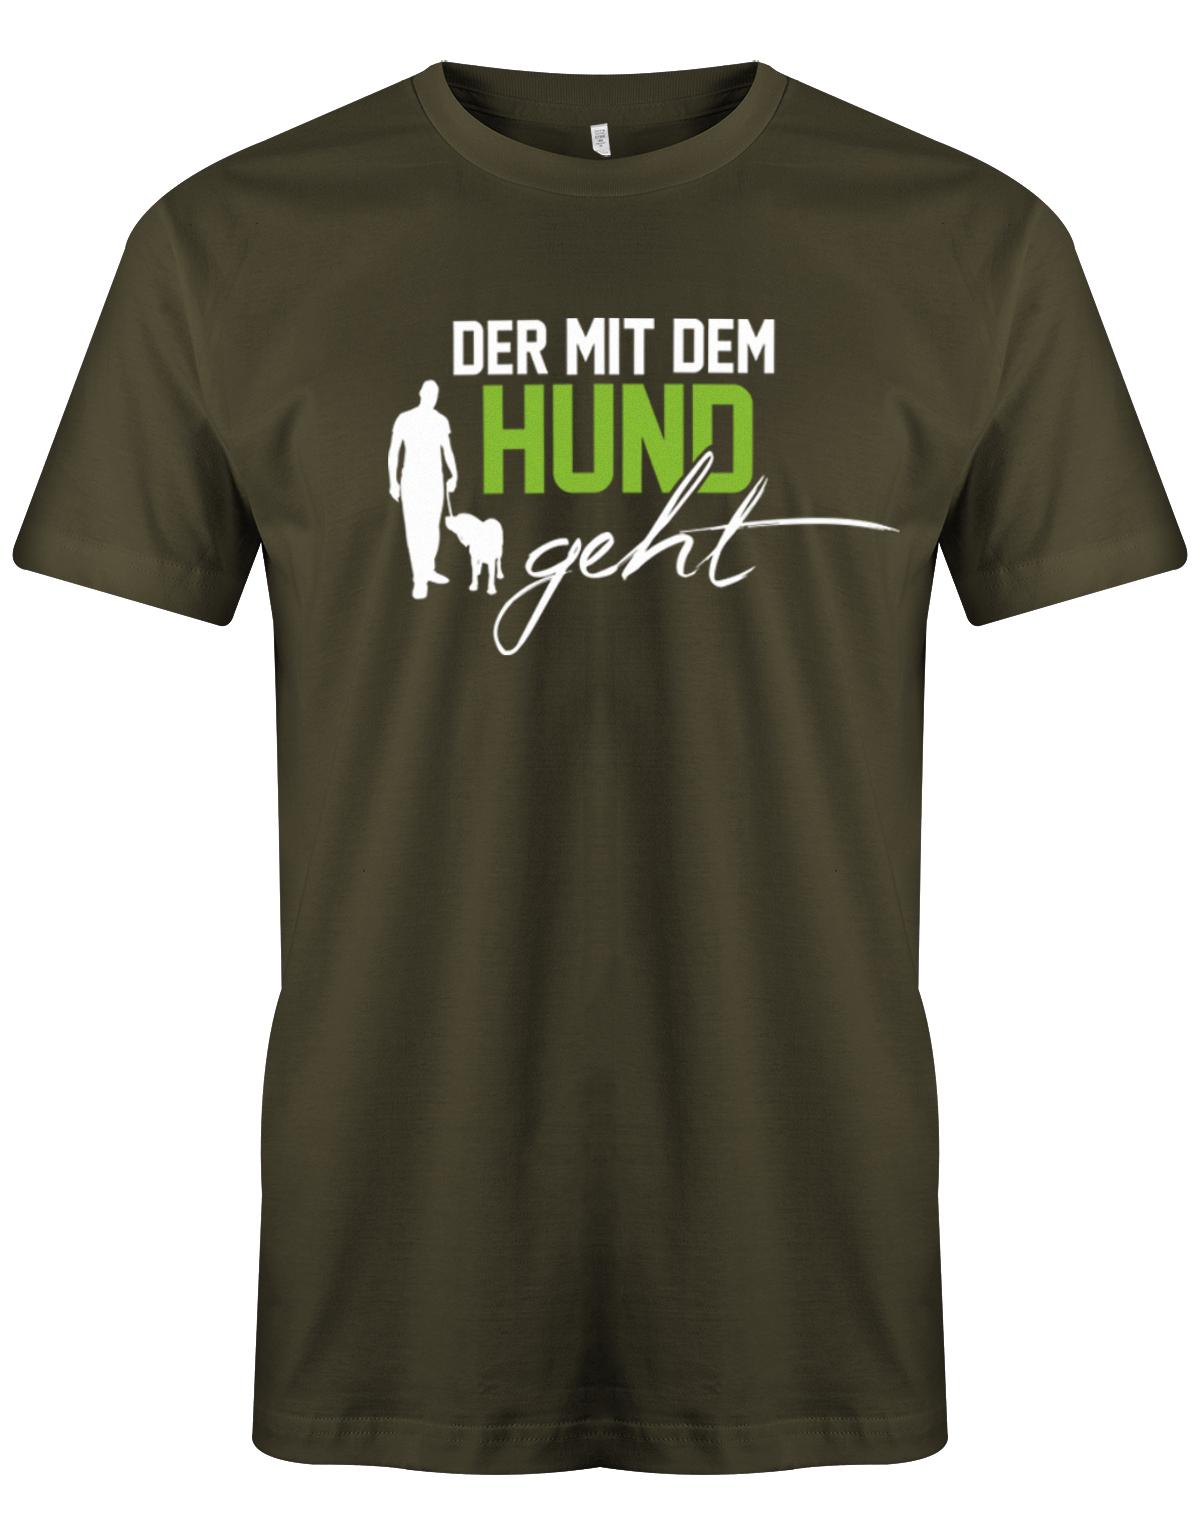 Der-mit-dem-Hund-Geht-Deluxe-Herren-Shirt-Army